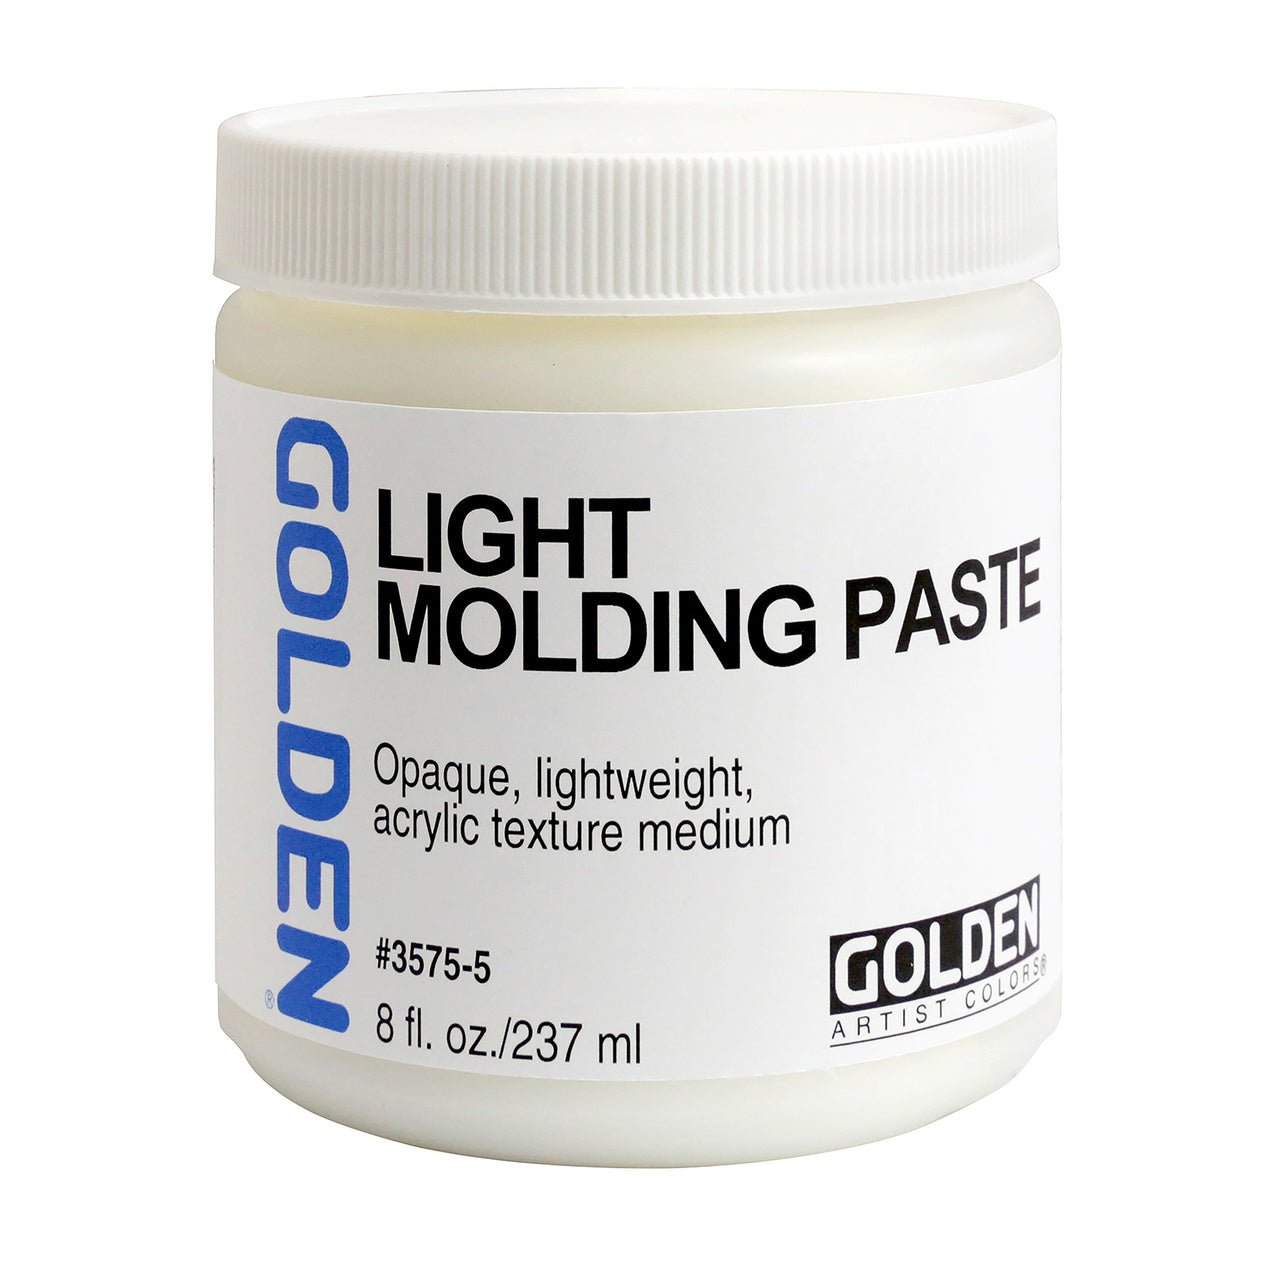 Golden Light Molding Paste 8 oz - merriartist.com